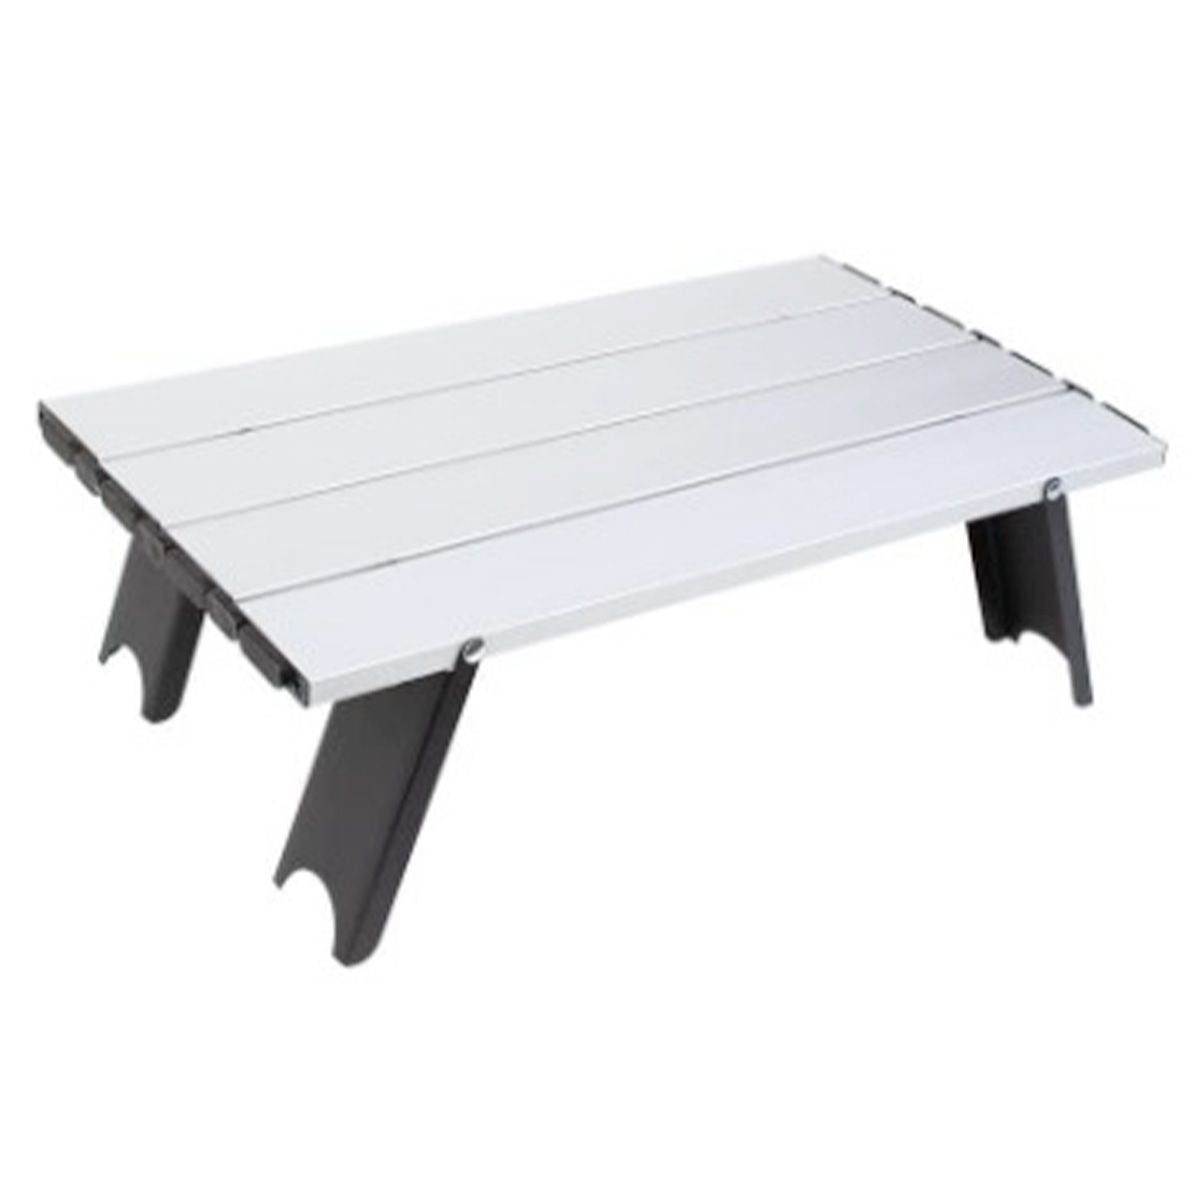 アウトドアテーブル レジャーテーブル 折りたたみ軽量アルミローテーブル 40×23×12cm 9001/323677